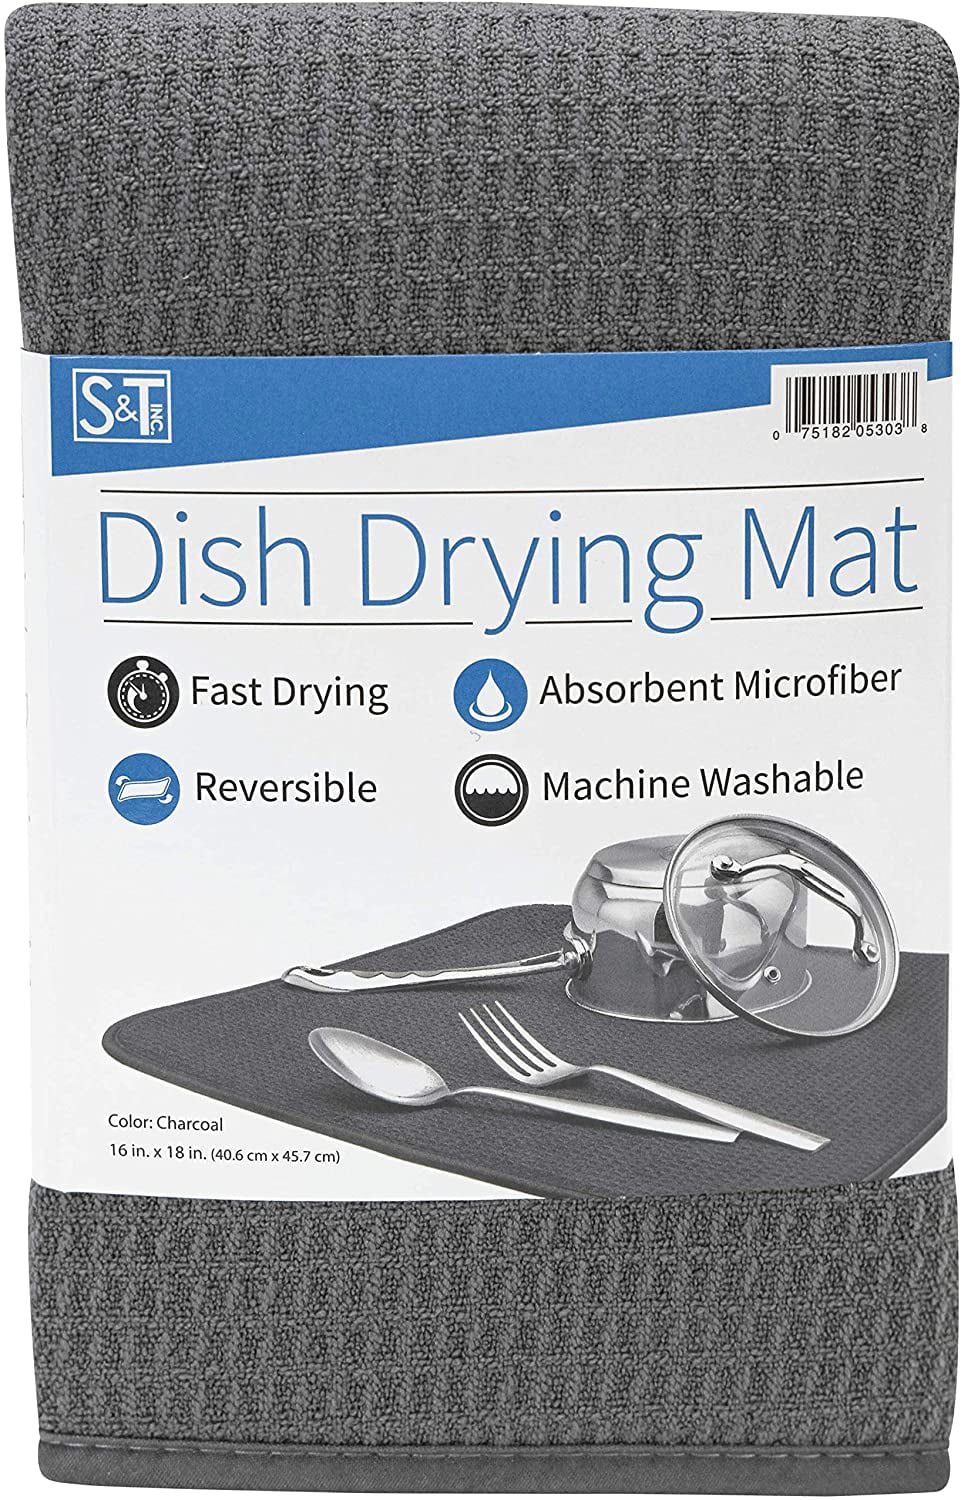 Dishwashing Tools: Microfiber Dish Drying Mat, Black, 18 x 16